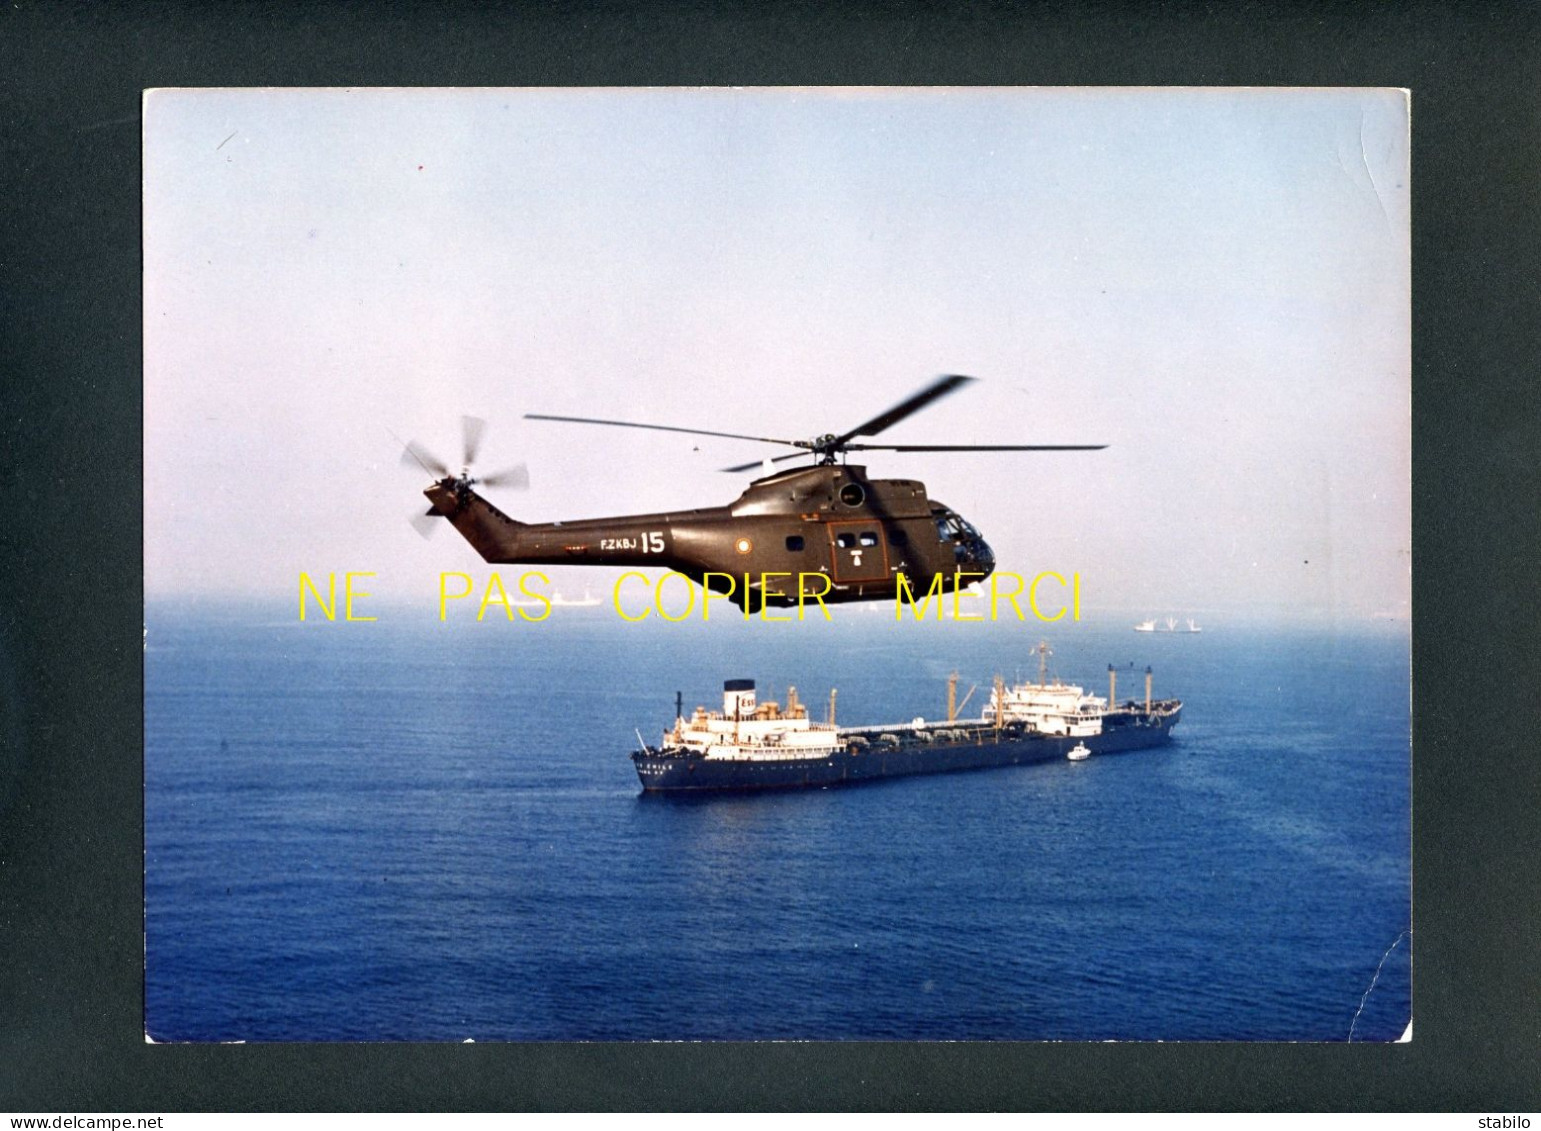 HELICOPTERE SURVOLANT UN CARGO - CLICHE AEROSPATIALE - GRAND FORMAT 18 X 24 - Aviation